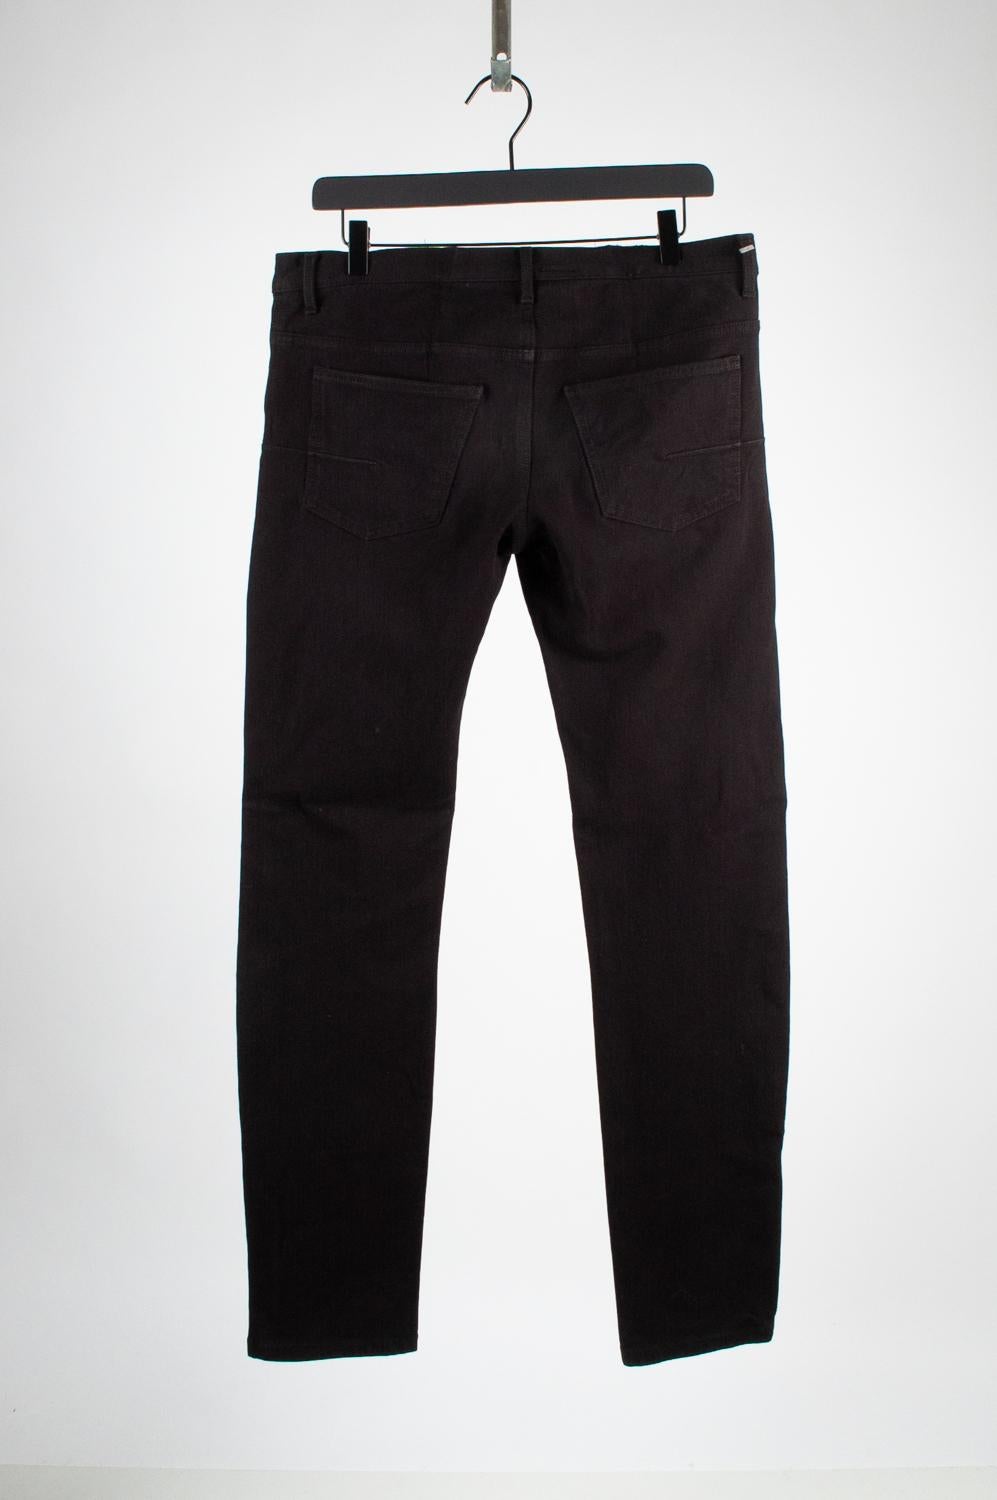 Men's Dior Homme Men Black Jeans Pants Size 34, S520